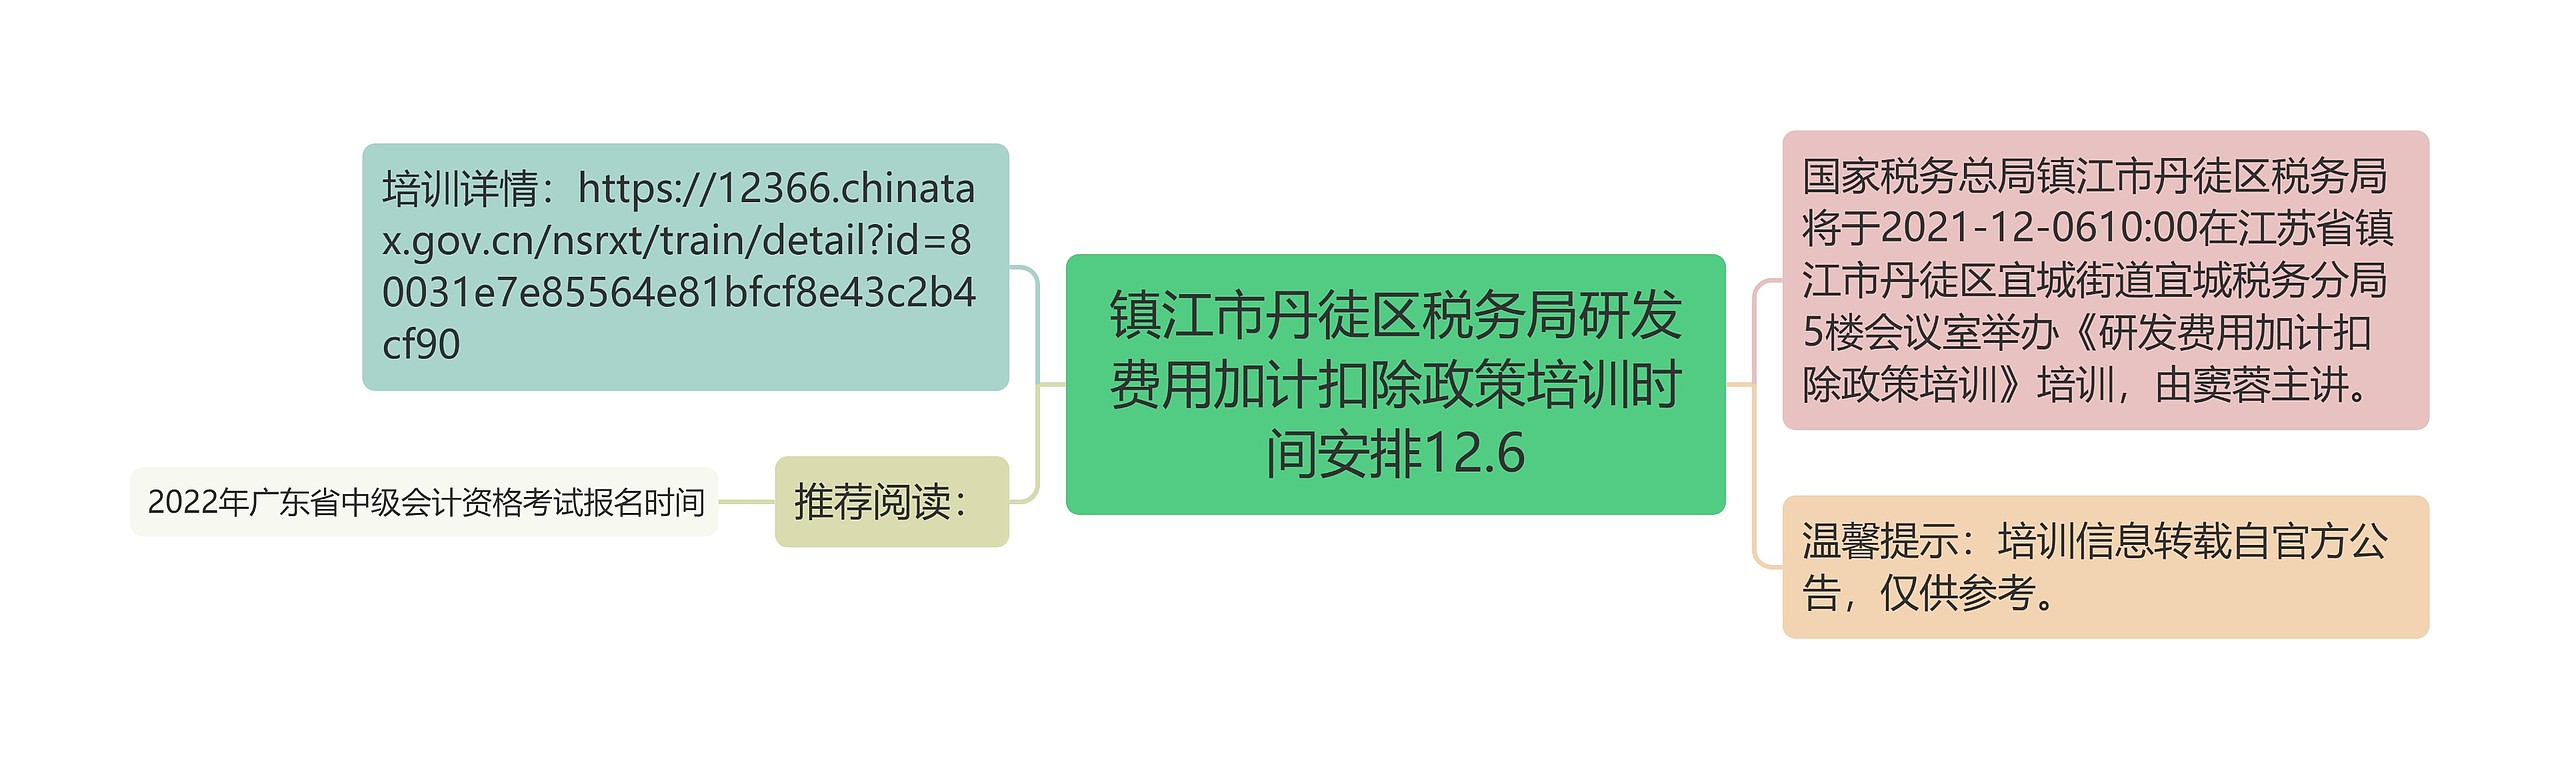 镇江市丹徒区税务局研发费用加计扣除政策培训时间安排12.6